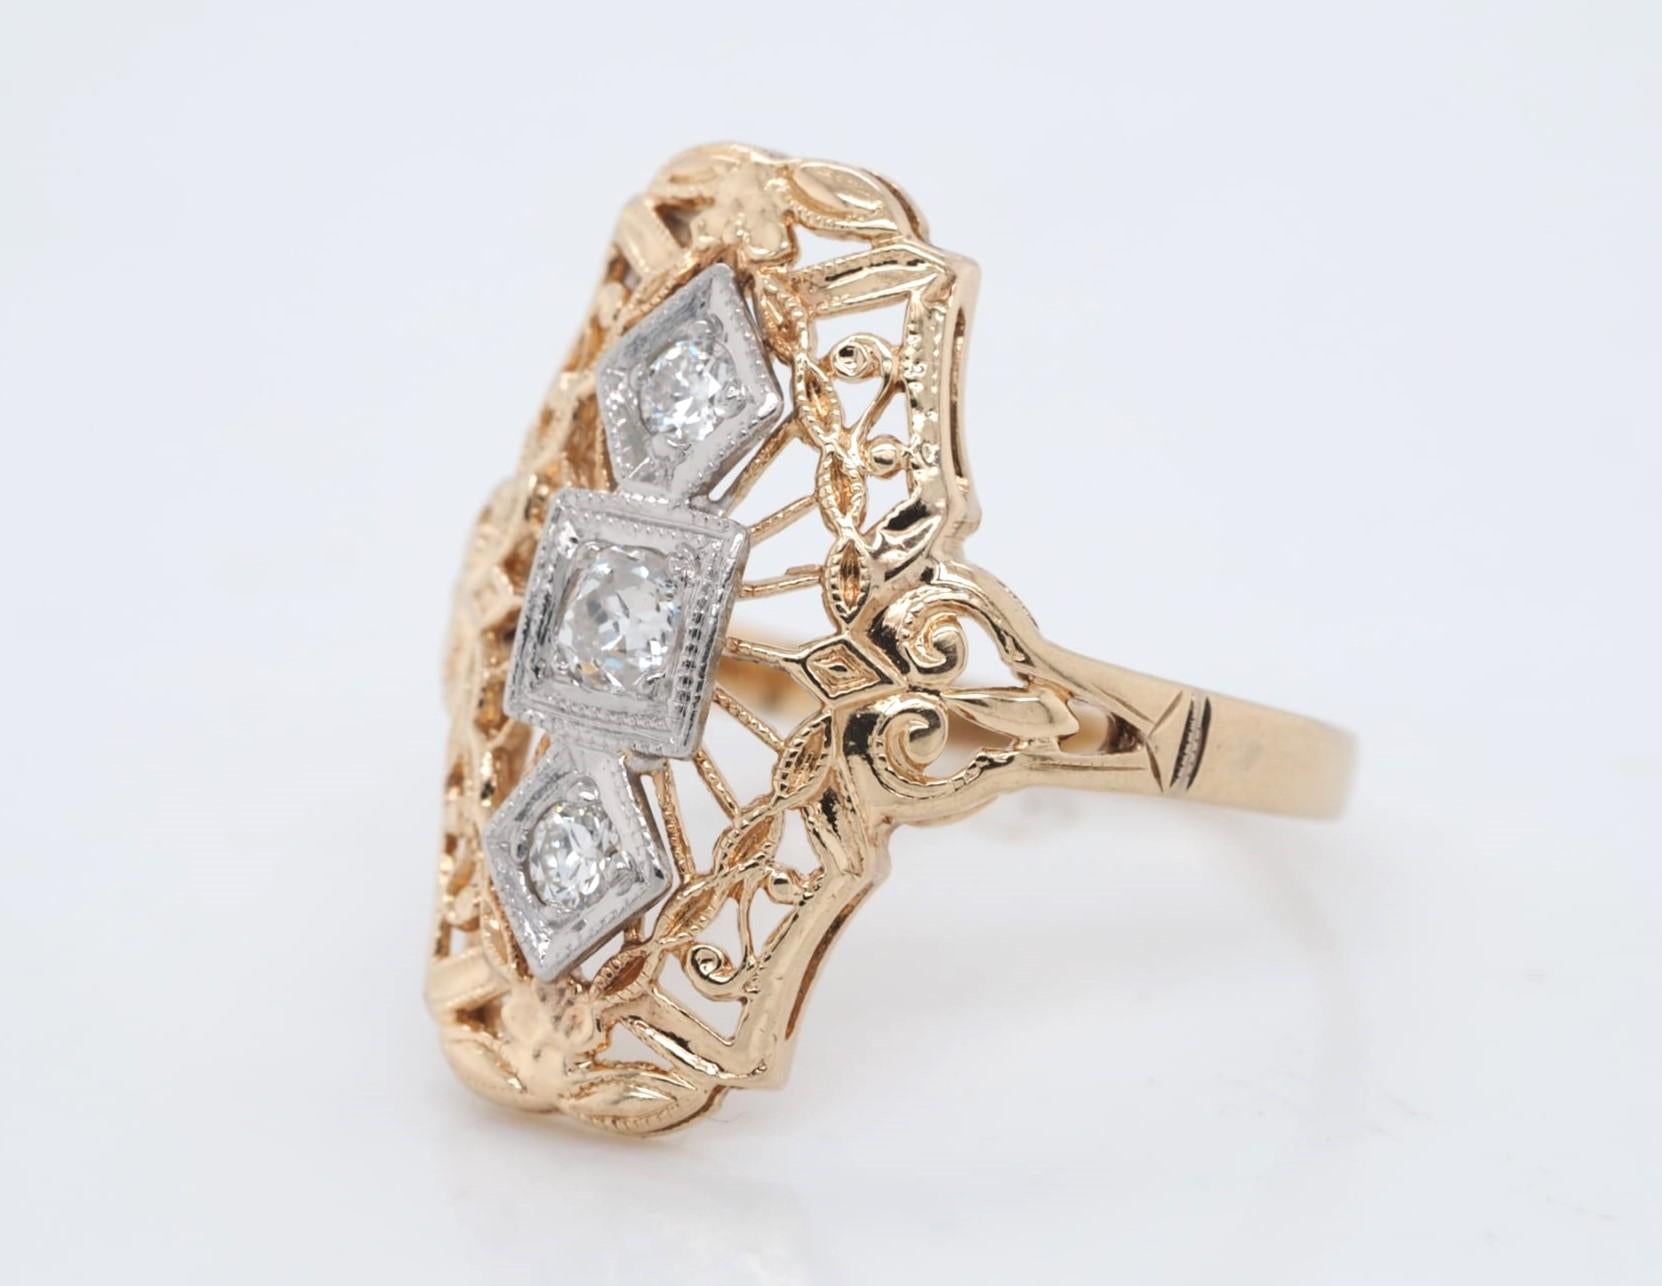 Dieser atemberaubende antike Ring ist aus 14 Karat Gelbgold und Palladium gefertigt und mit einem natürlichen, runden Diamanten im Old European Cut mit einem Gesamtkaratgewicht von 0,23 versehen. Der Diamant hat einen Reinheitsgrad von SI1-SI2 und